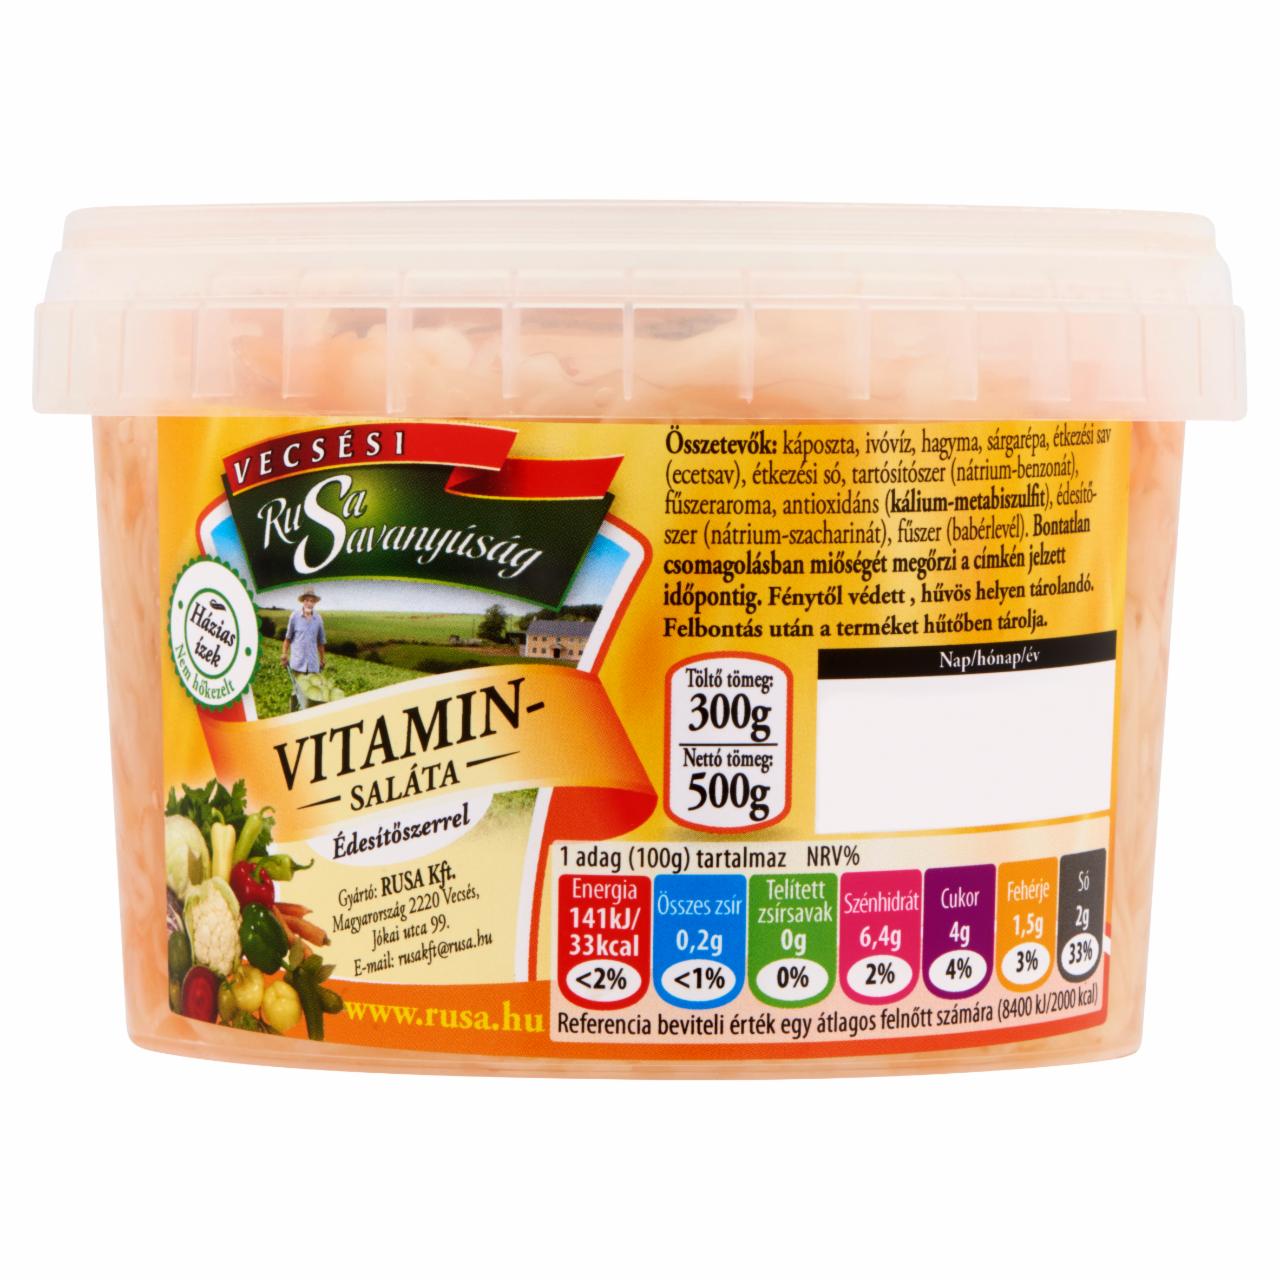 Képek - Rusa Savanyúság vitaminsaláta édesítőszerrel 500 g